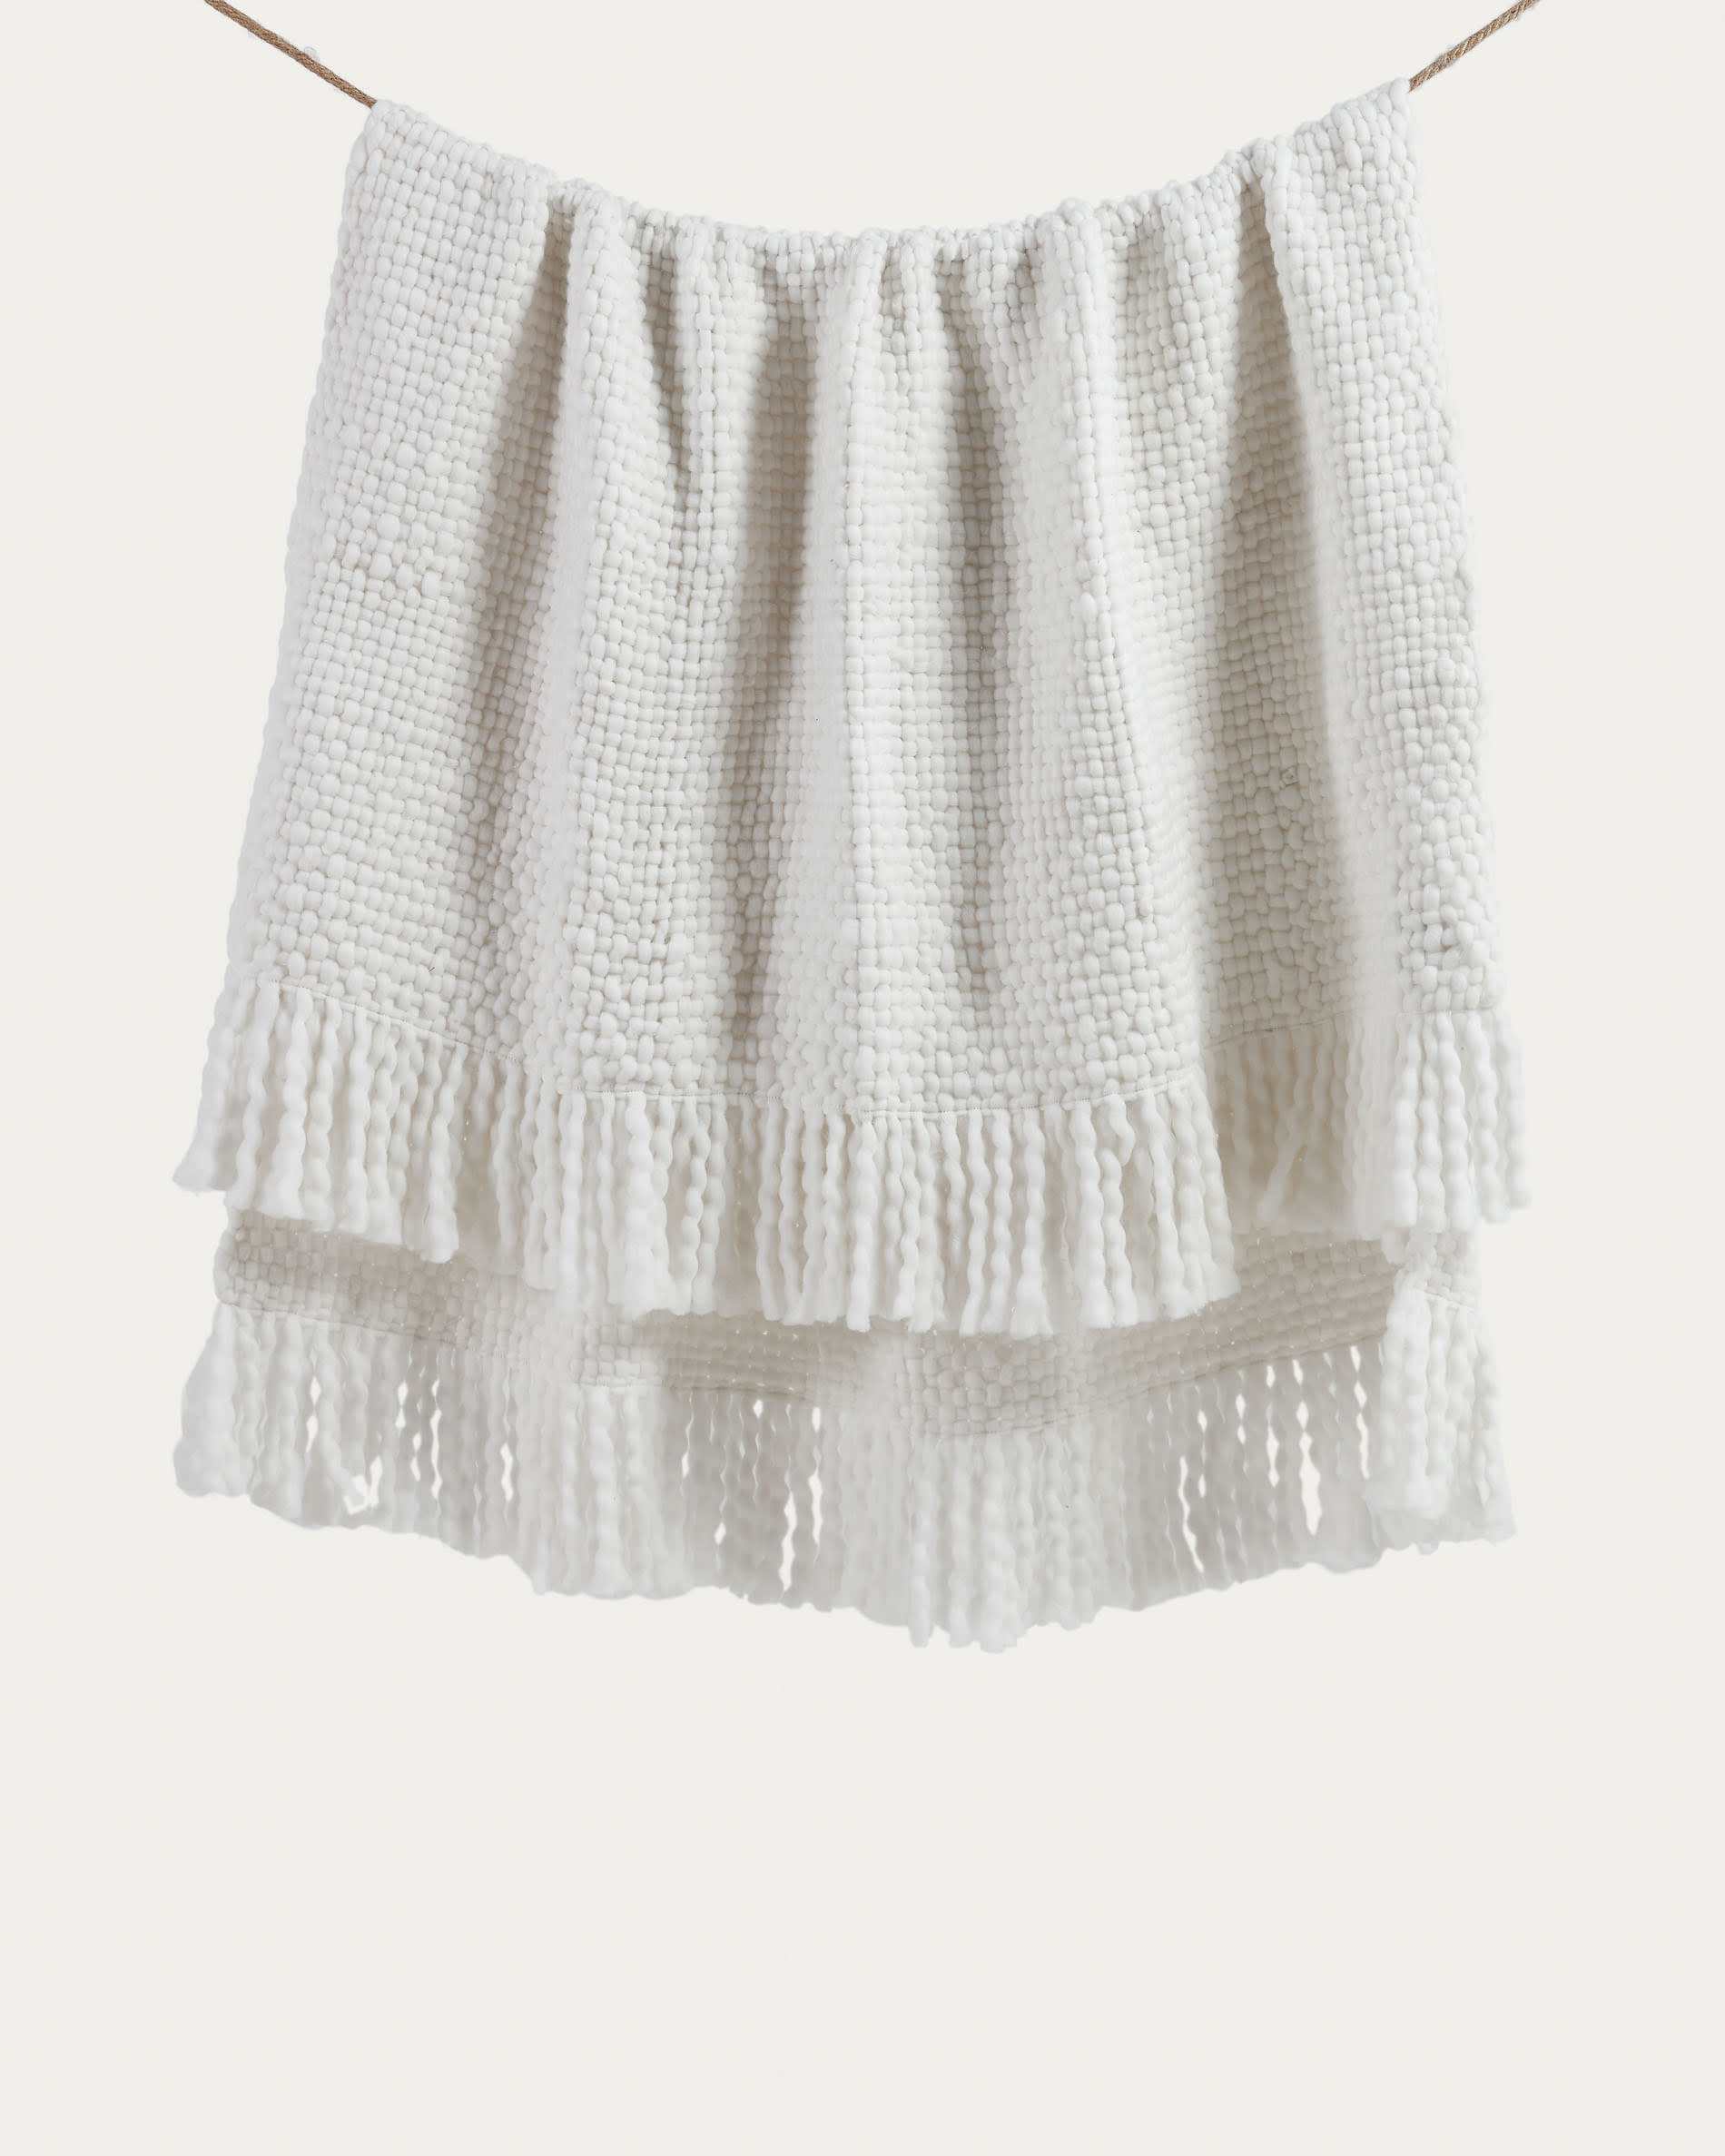 Manta 100% lana merino con flecos, tamaño 140x200cm, diseño rayas  crudo/marengo/gris melange - Tienda Hohos